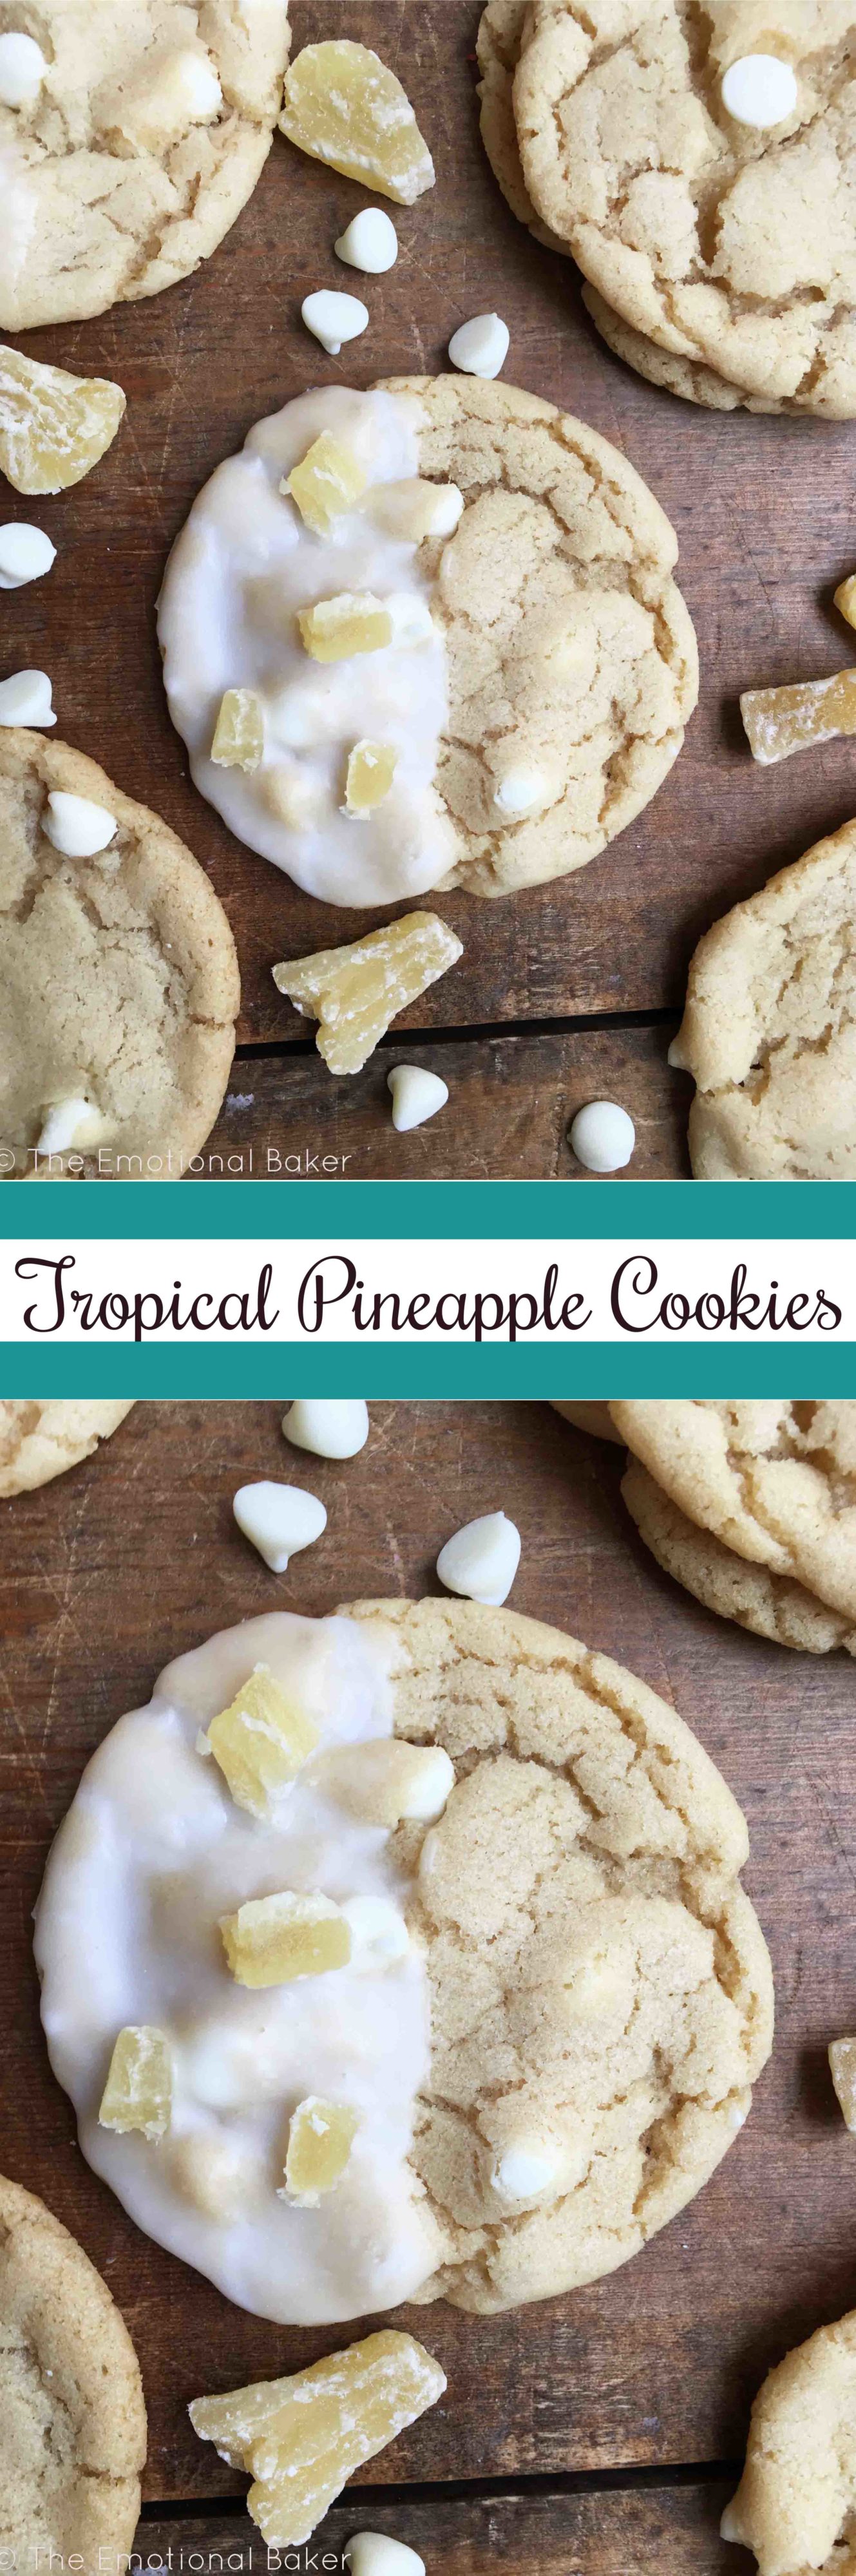 Tropical Pineapple Cookies